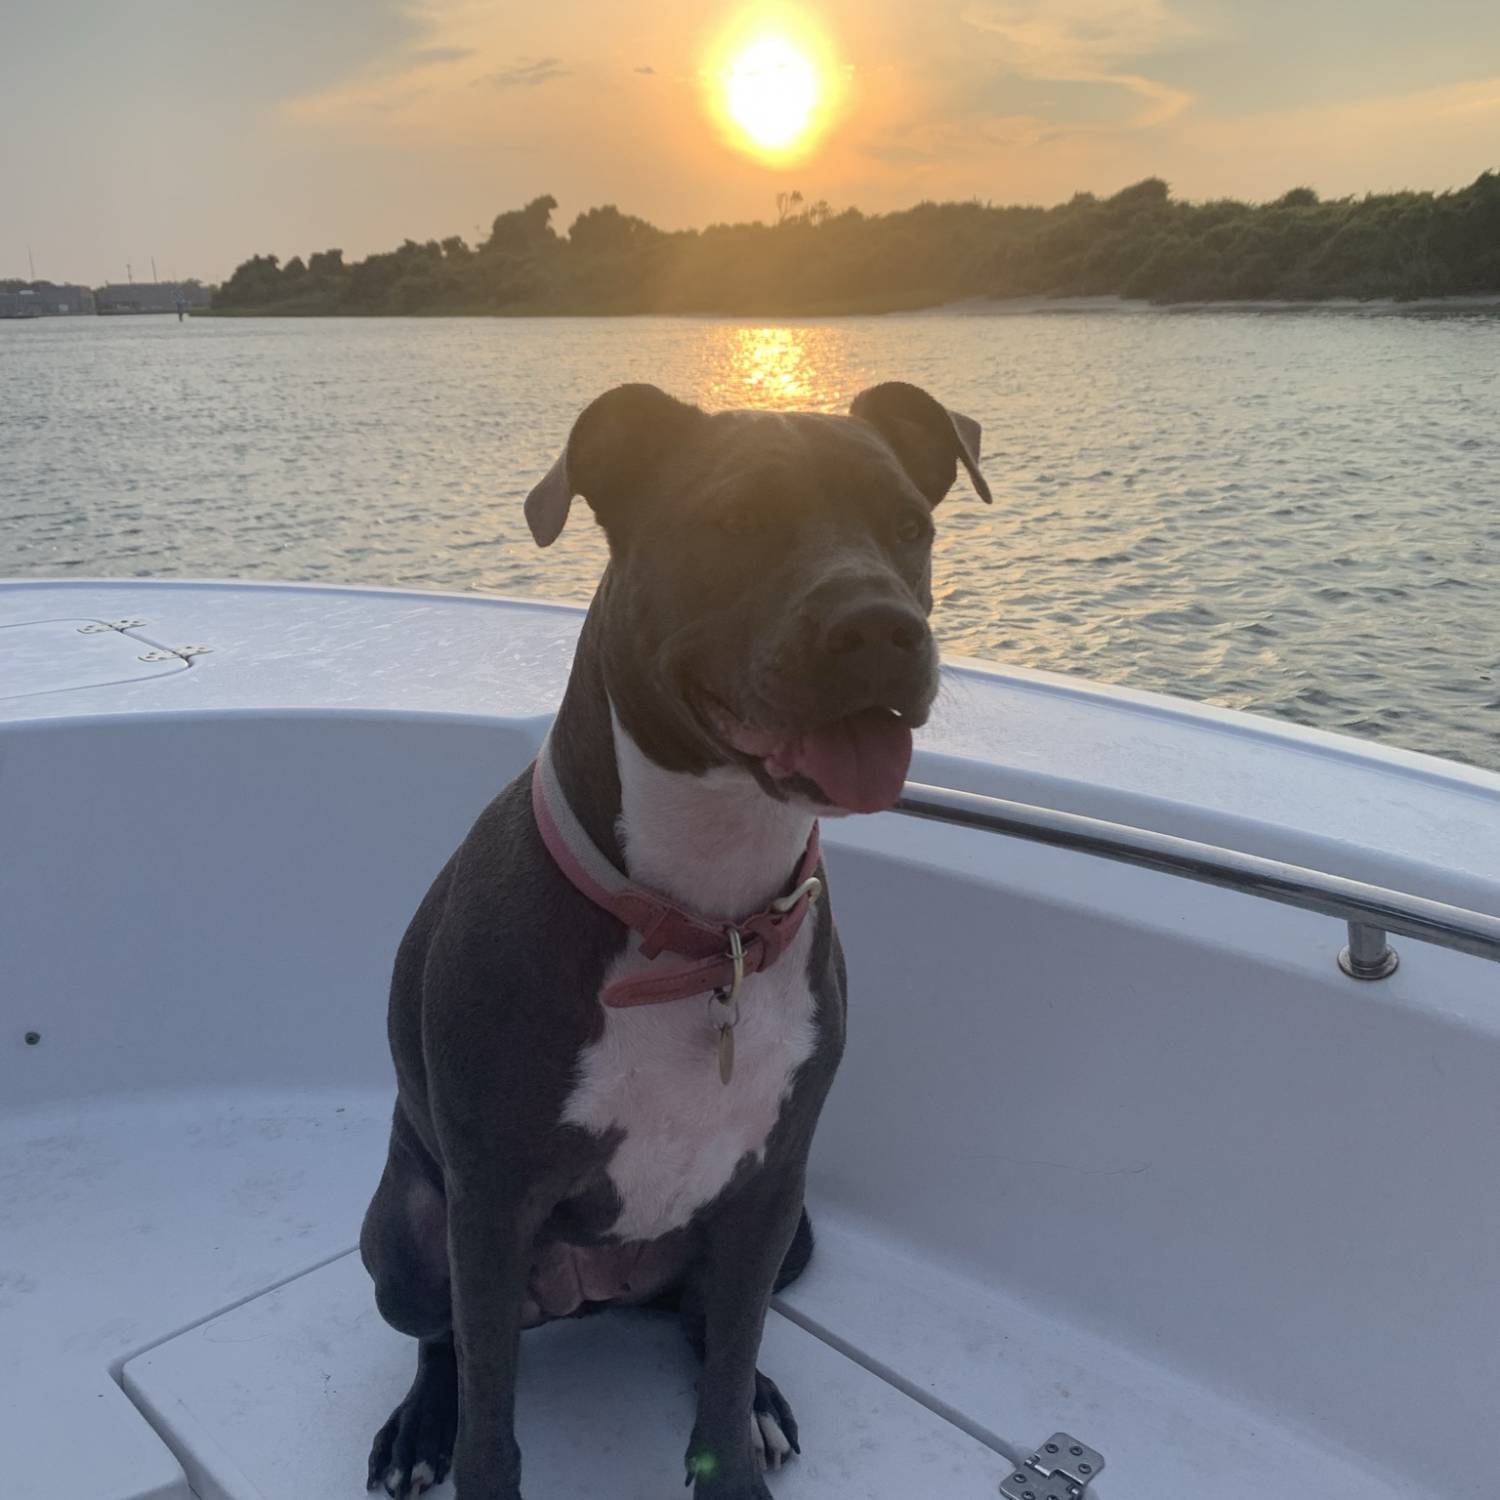 Dog on boat